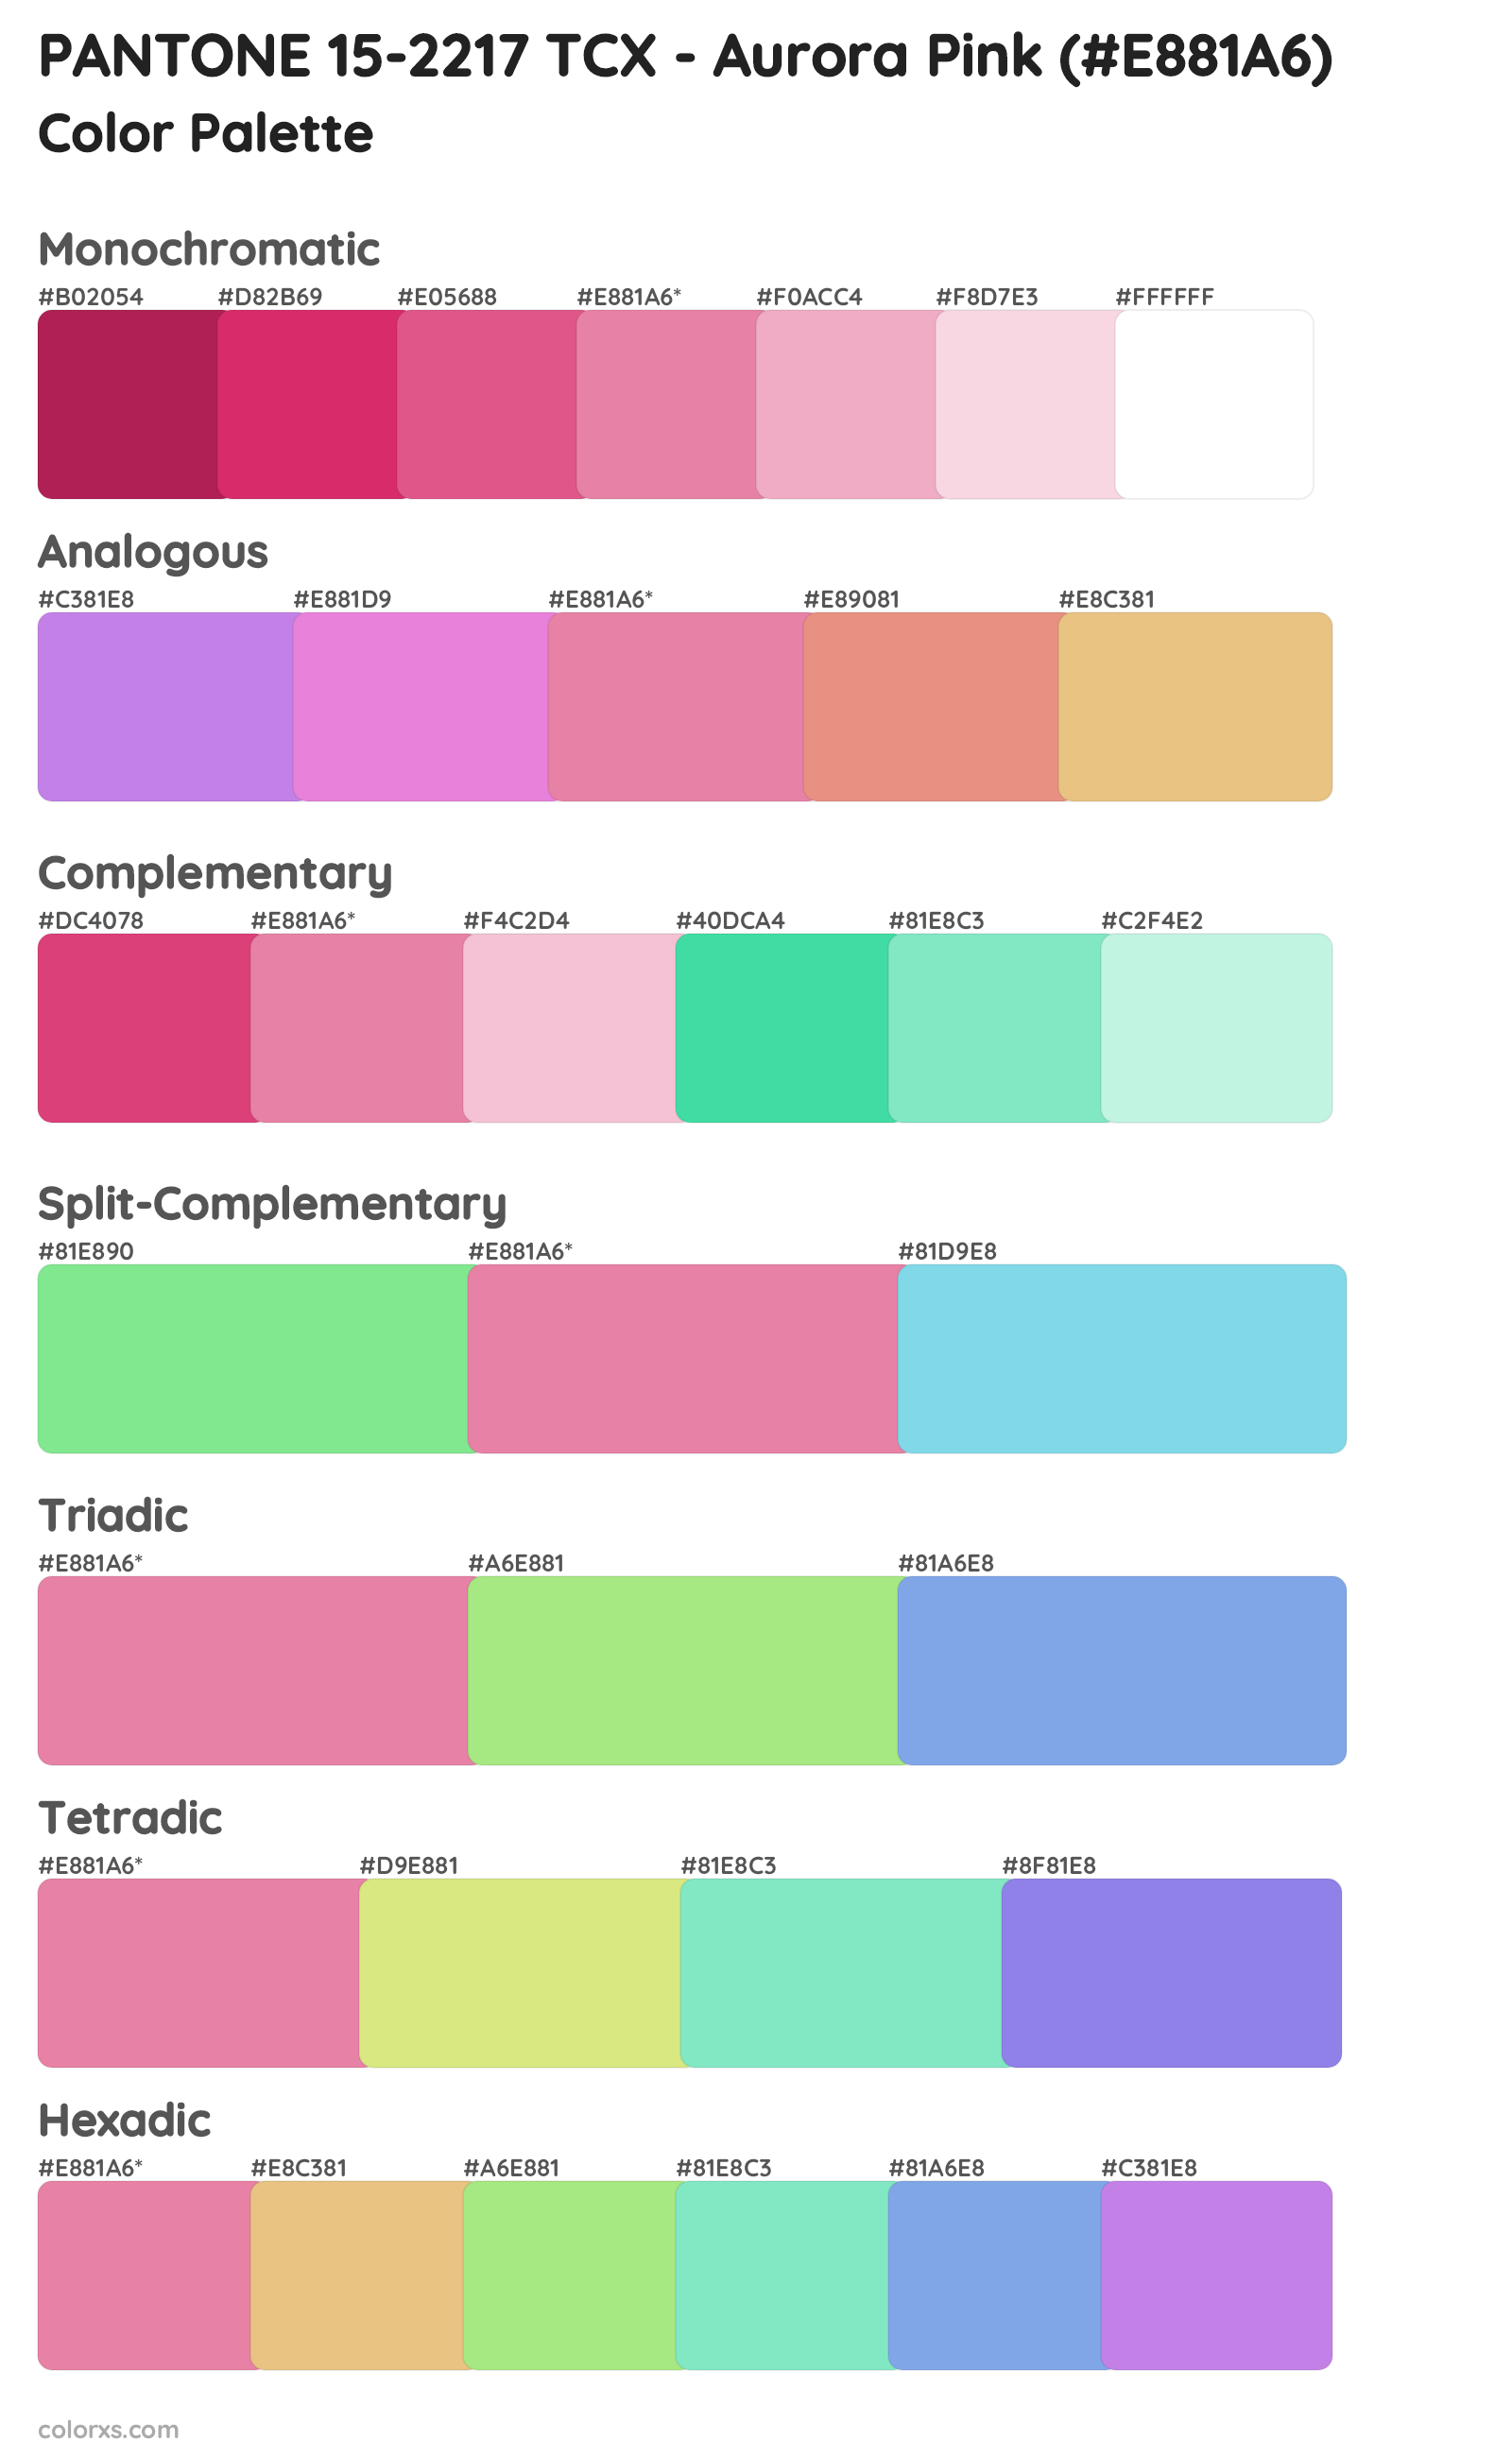 PANTONE 15-2217 TCX - Aurora Pink Color Scheme Palettes